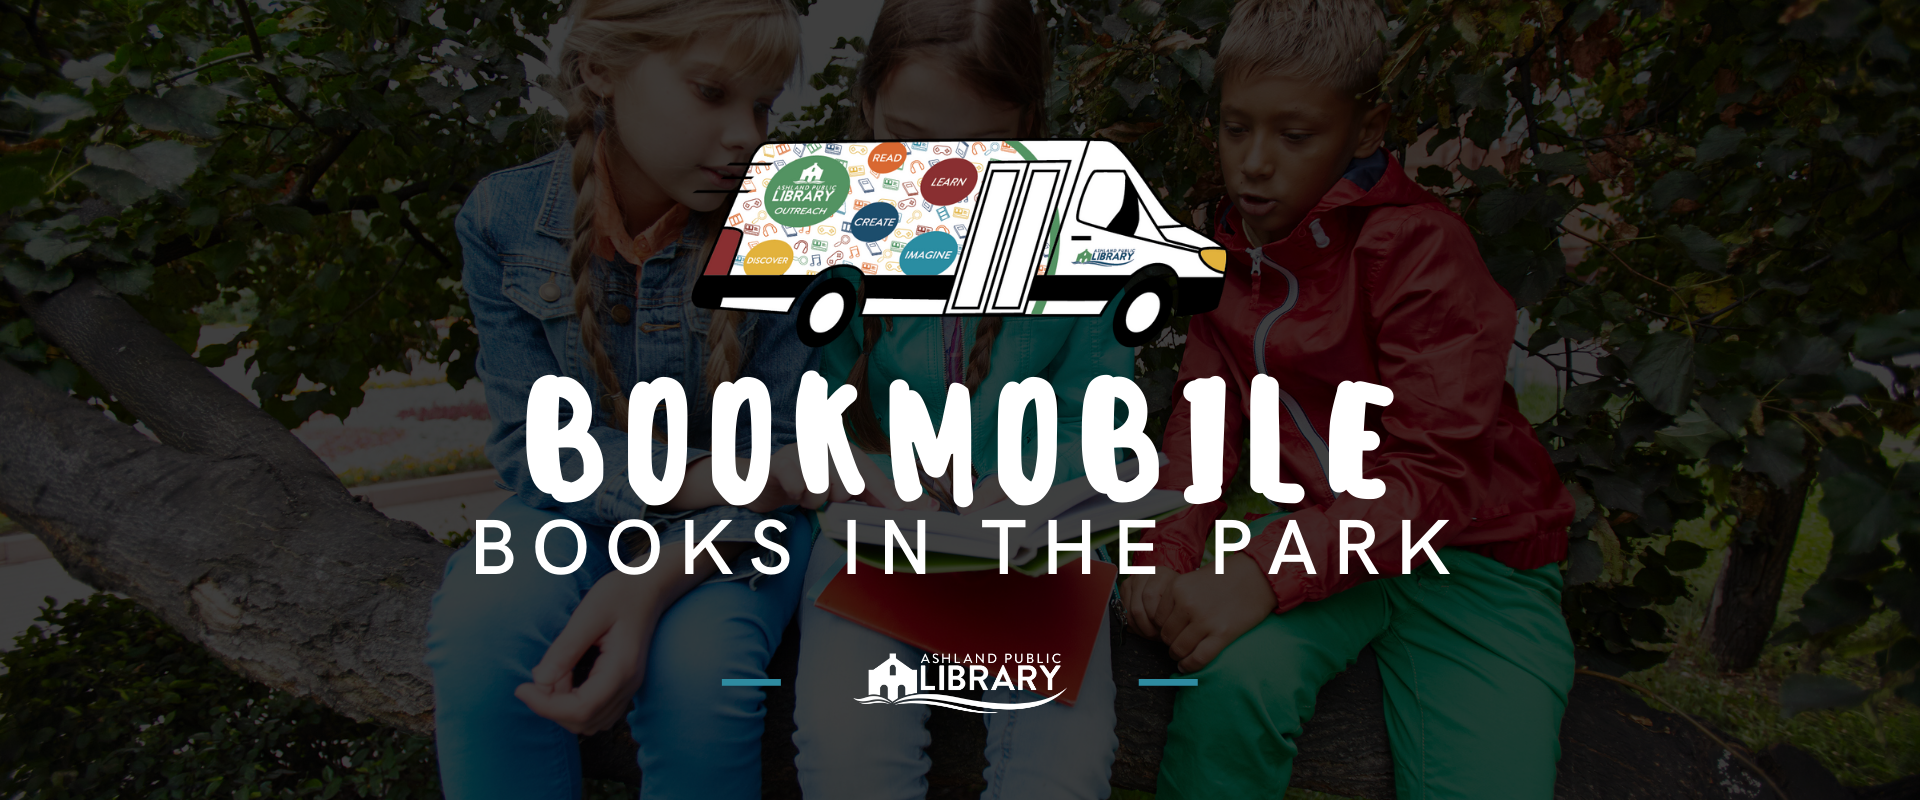 Bookmobile Books in the Park